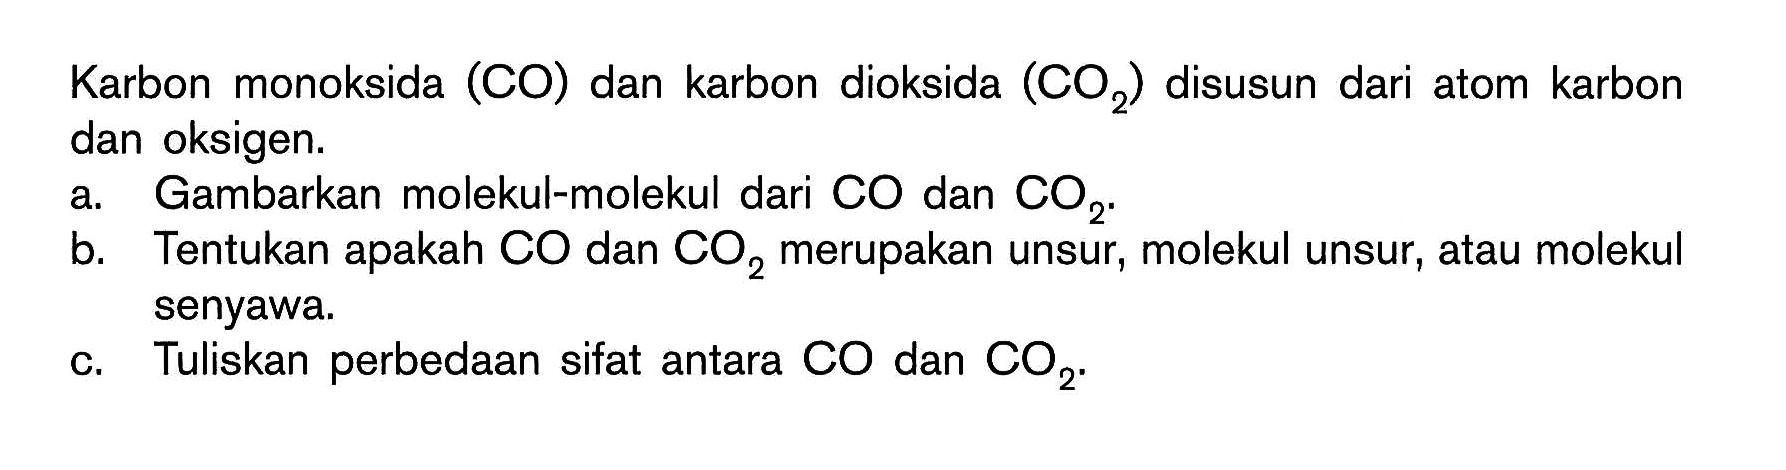 Karbon monoksida (CO) dan karbon dioksida (CO2) disusun dari atom karbon dan oksigen.
a. Gambarkan molekul-molekul dari CO dan CO2.
b. Tentukan apakah CO dan CO2 merupakan unsur, molekul unsur, atau molekul senyawa.
c. Tuliskan perbedaan sifat antara CO dan CO2. 